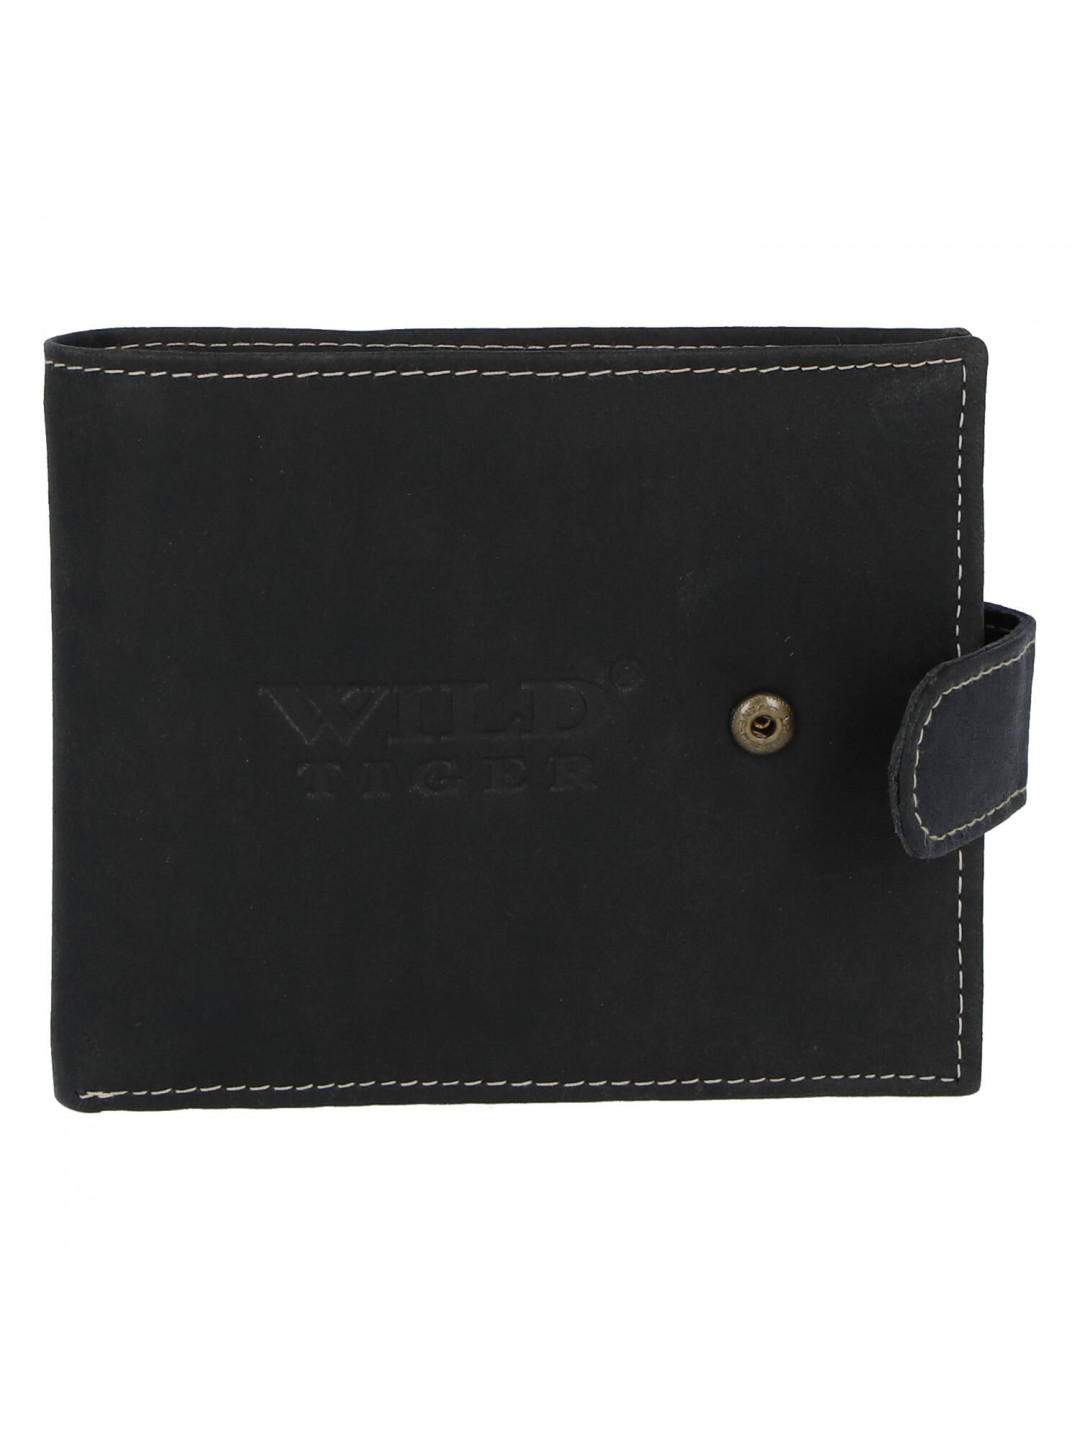 Kožená pánská černá peněženka – WILD Tere 2